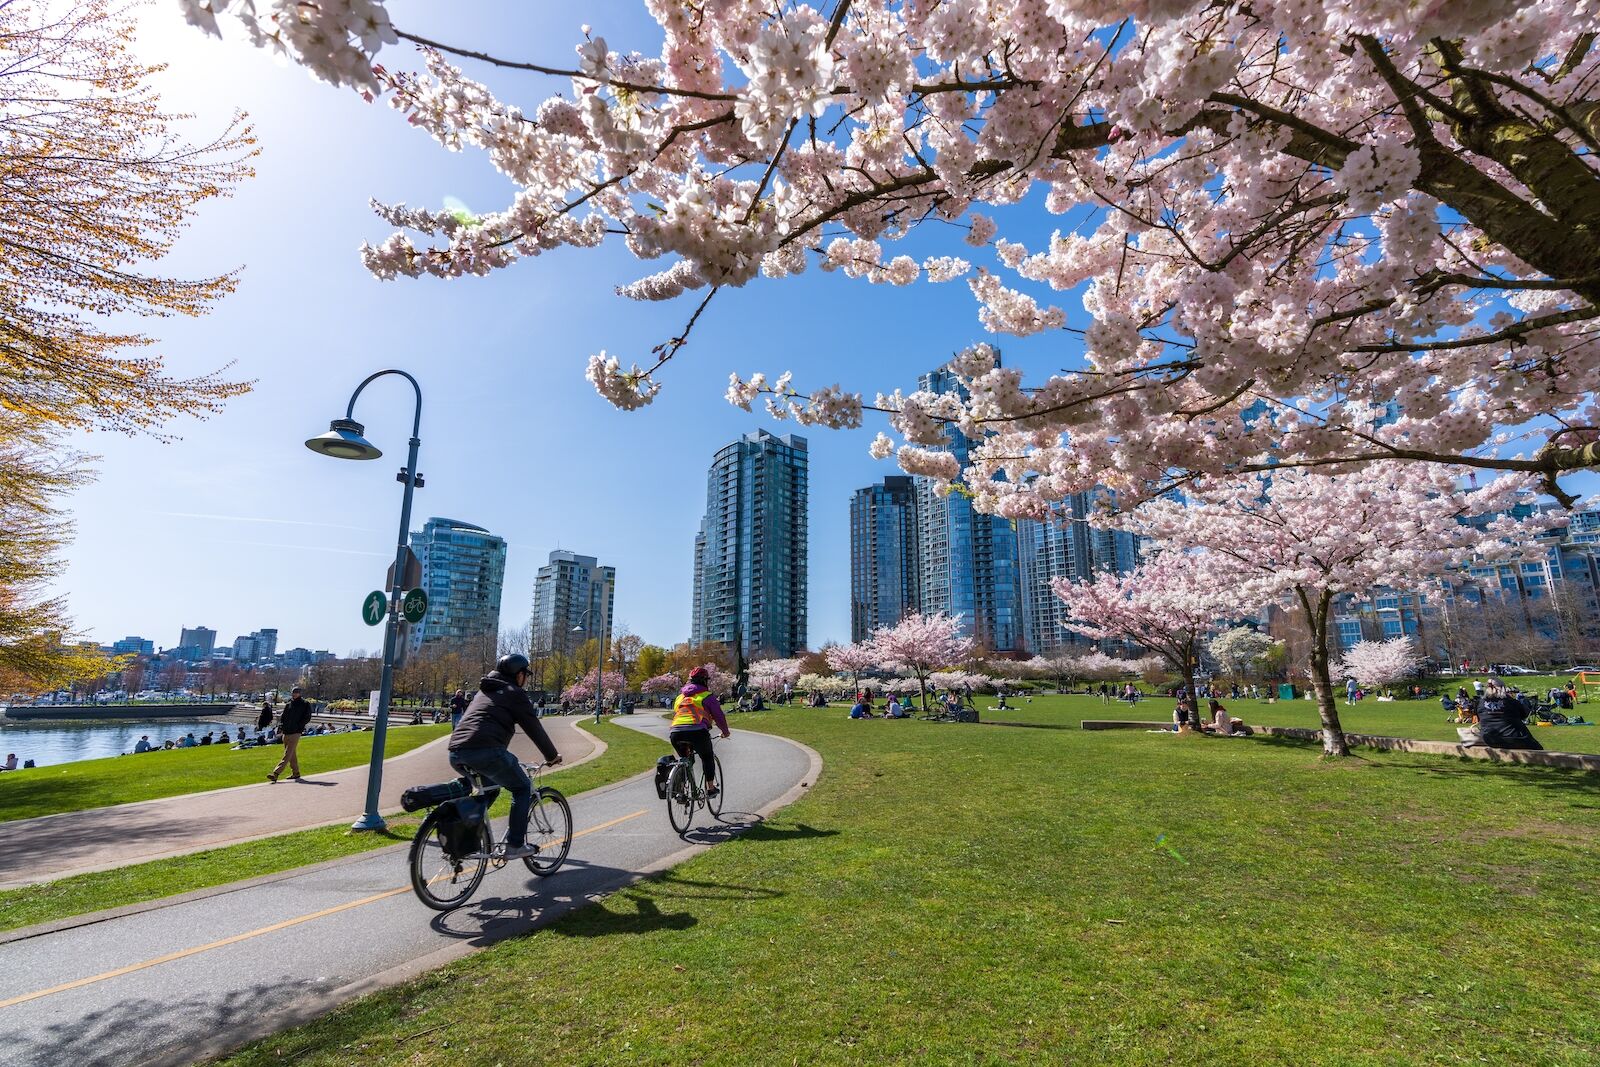 Biking past cherry blossoms